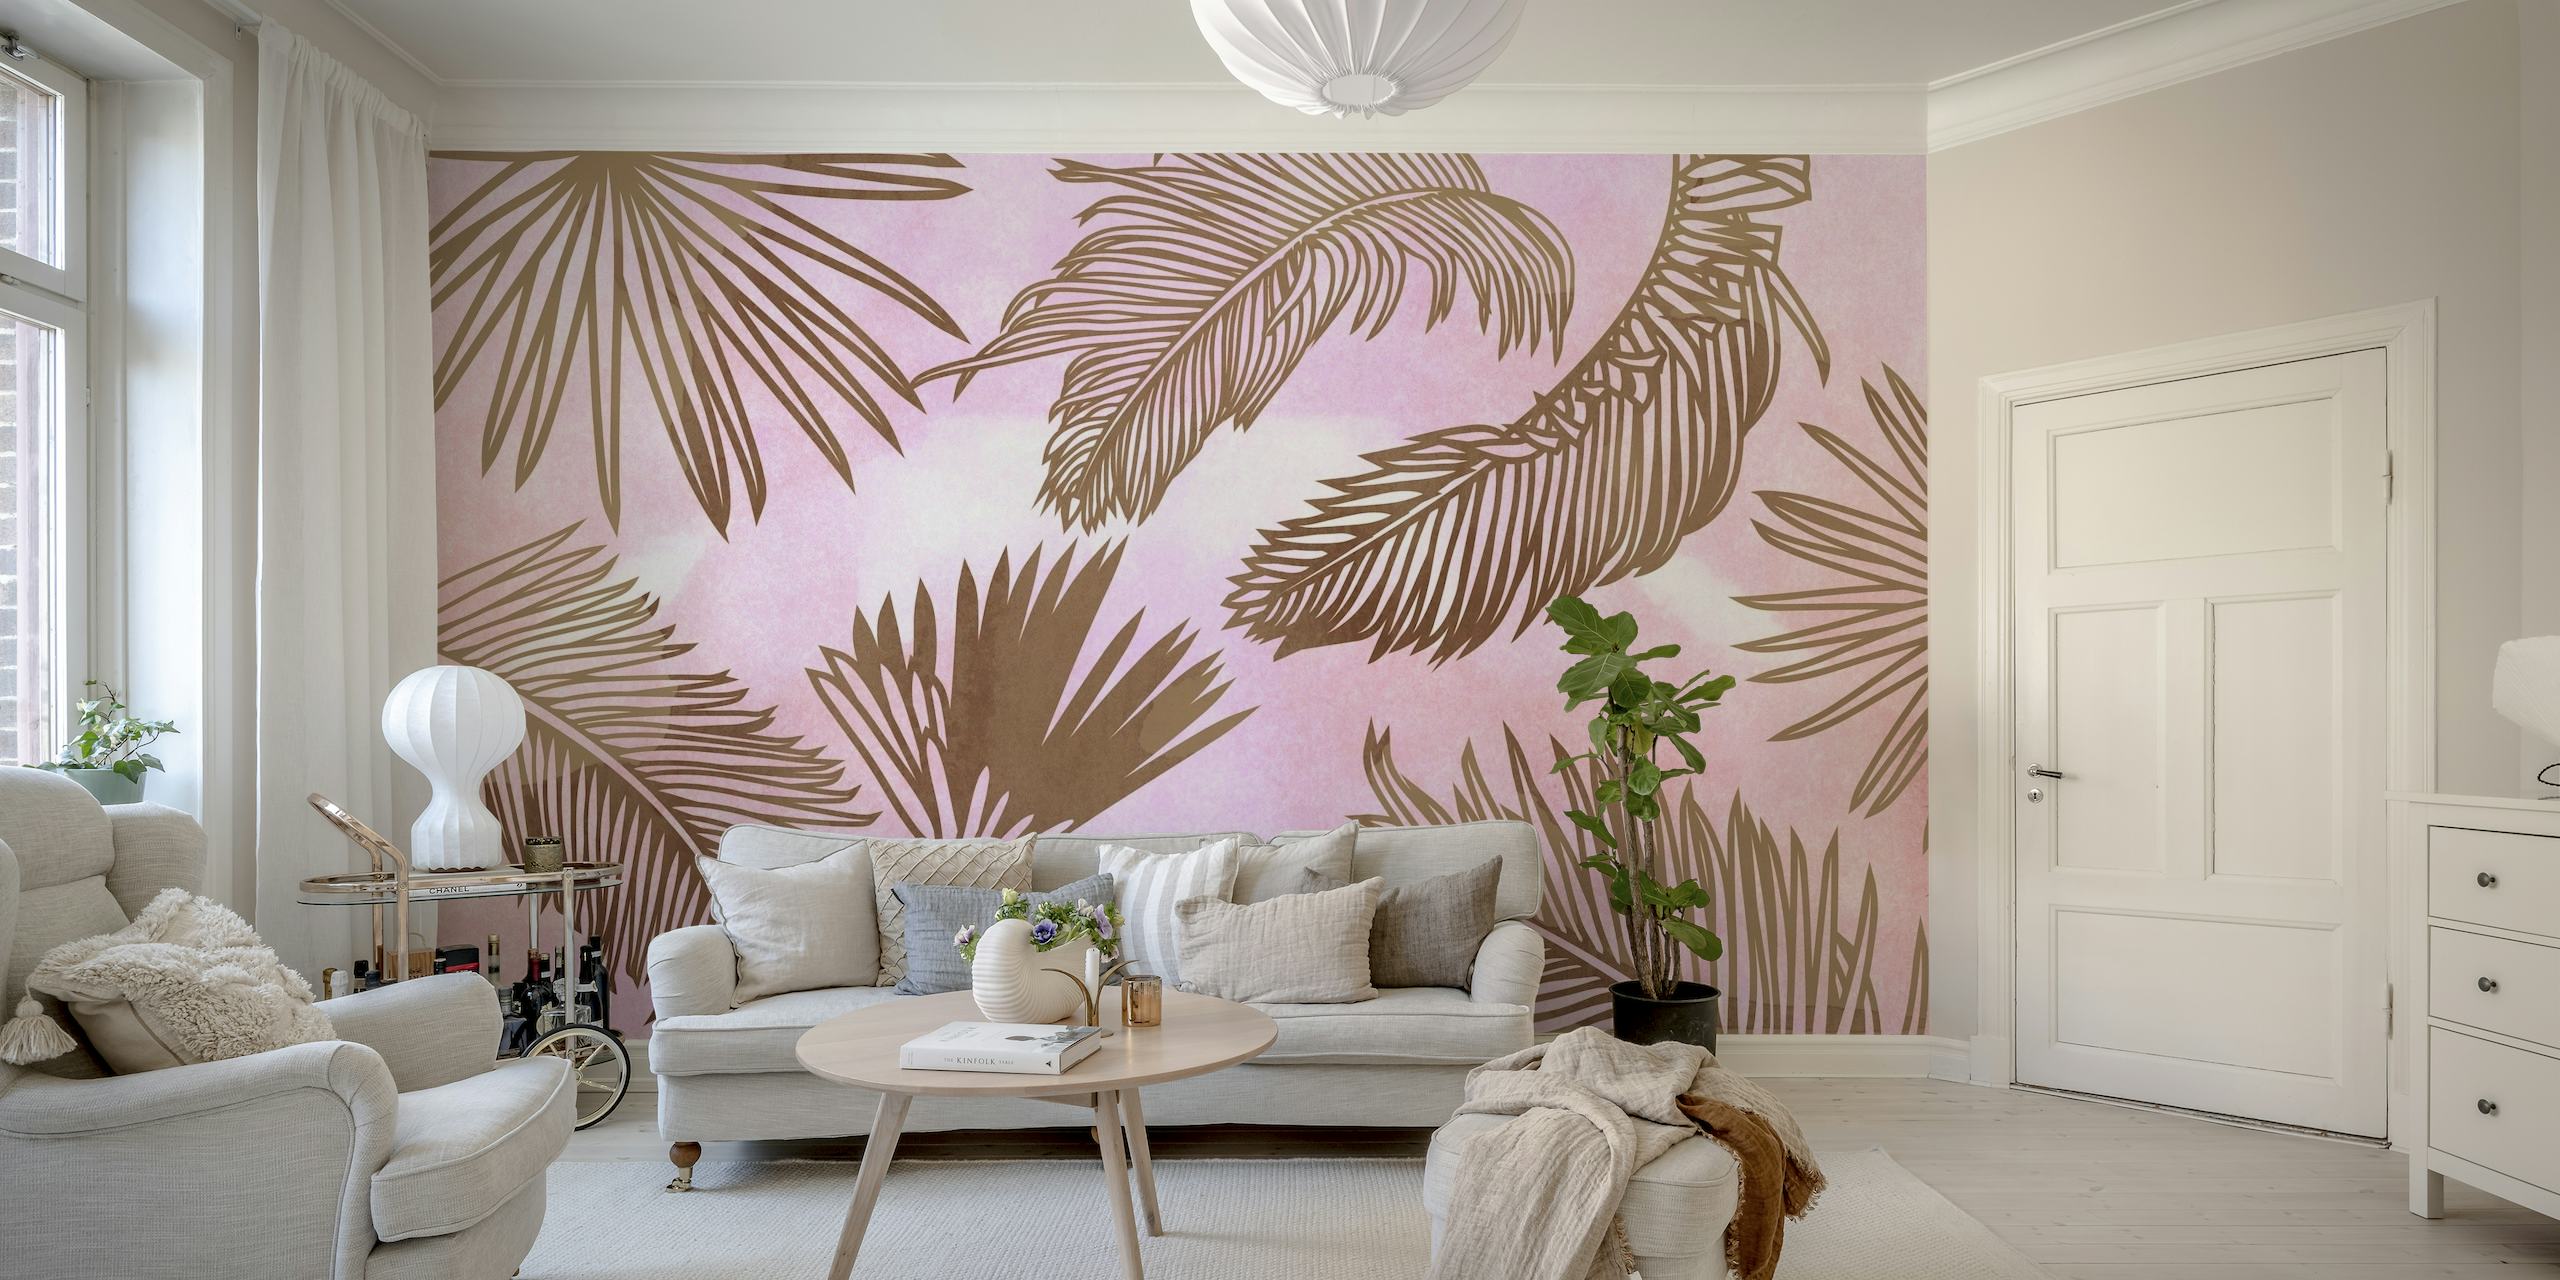 fotomural vinílico de parede em tons pastéis com tema de selva e efeito aquarela